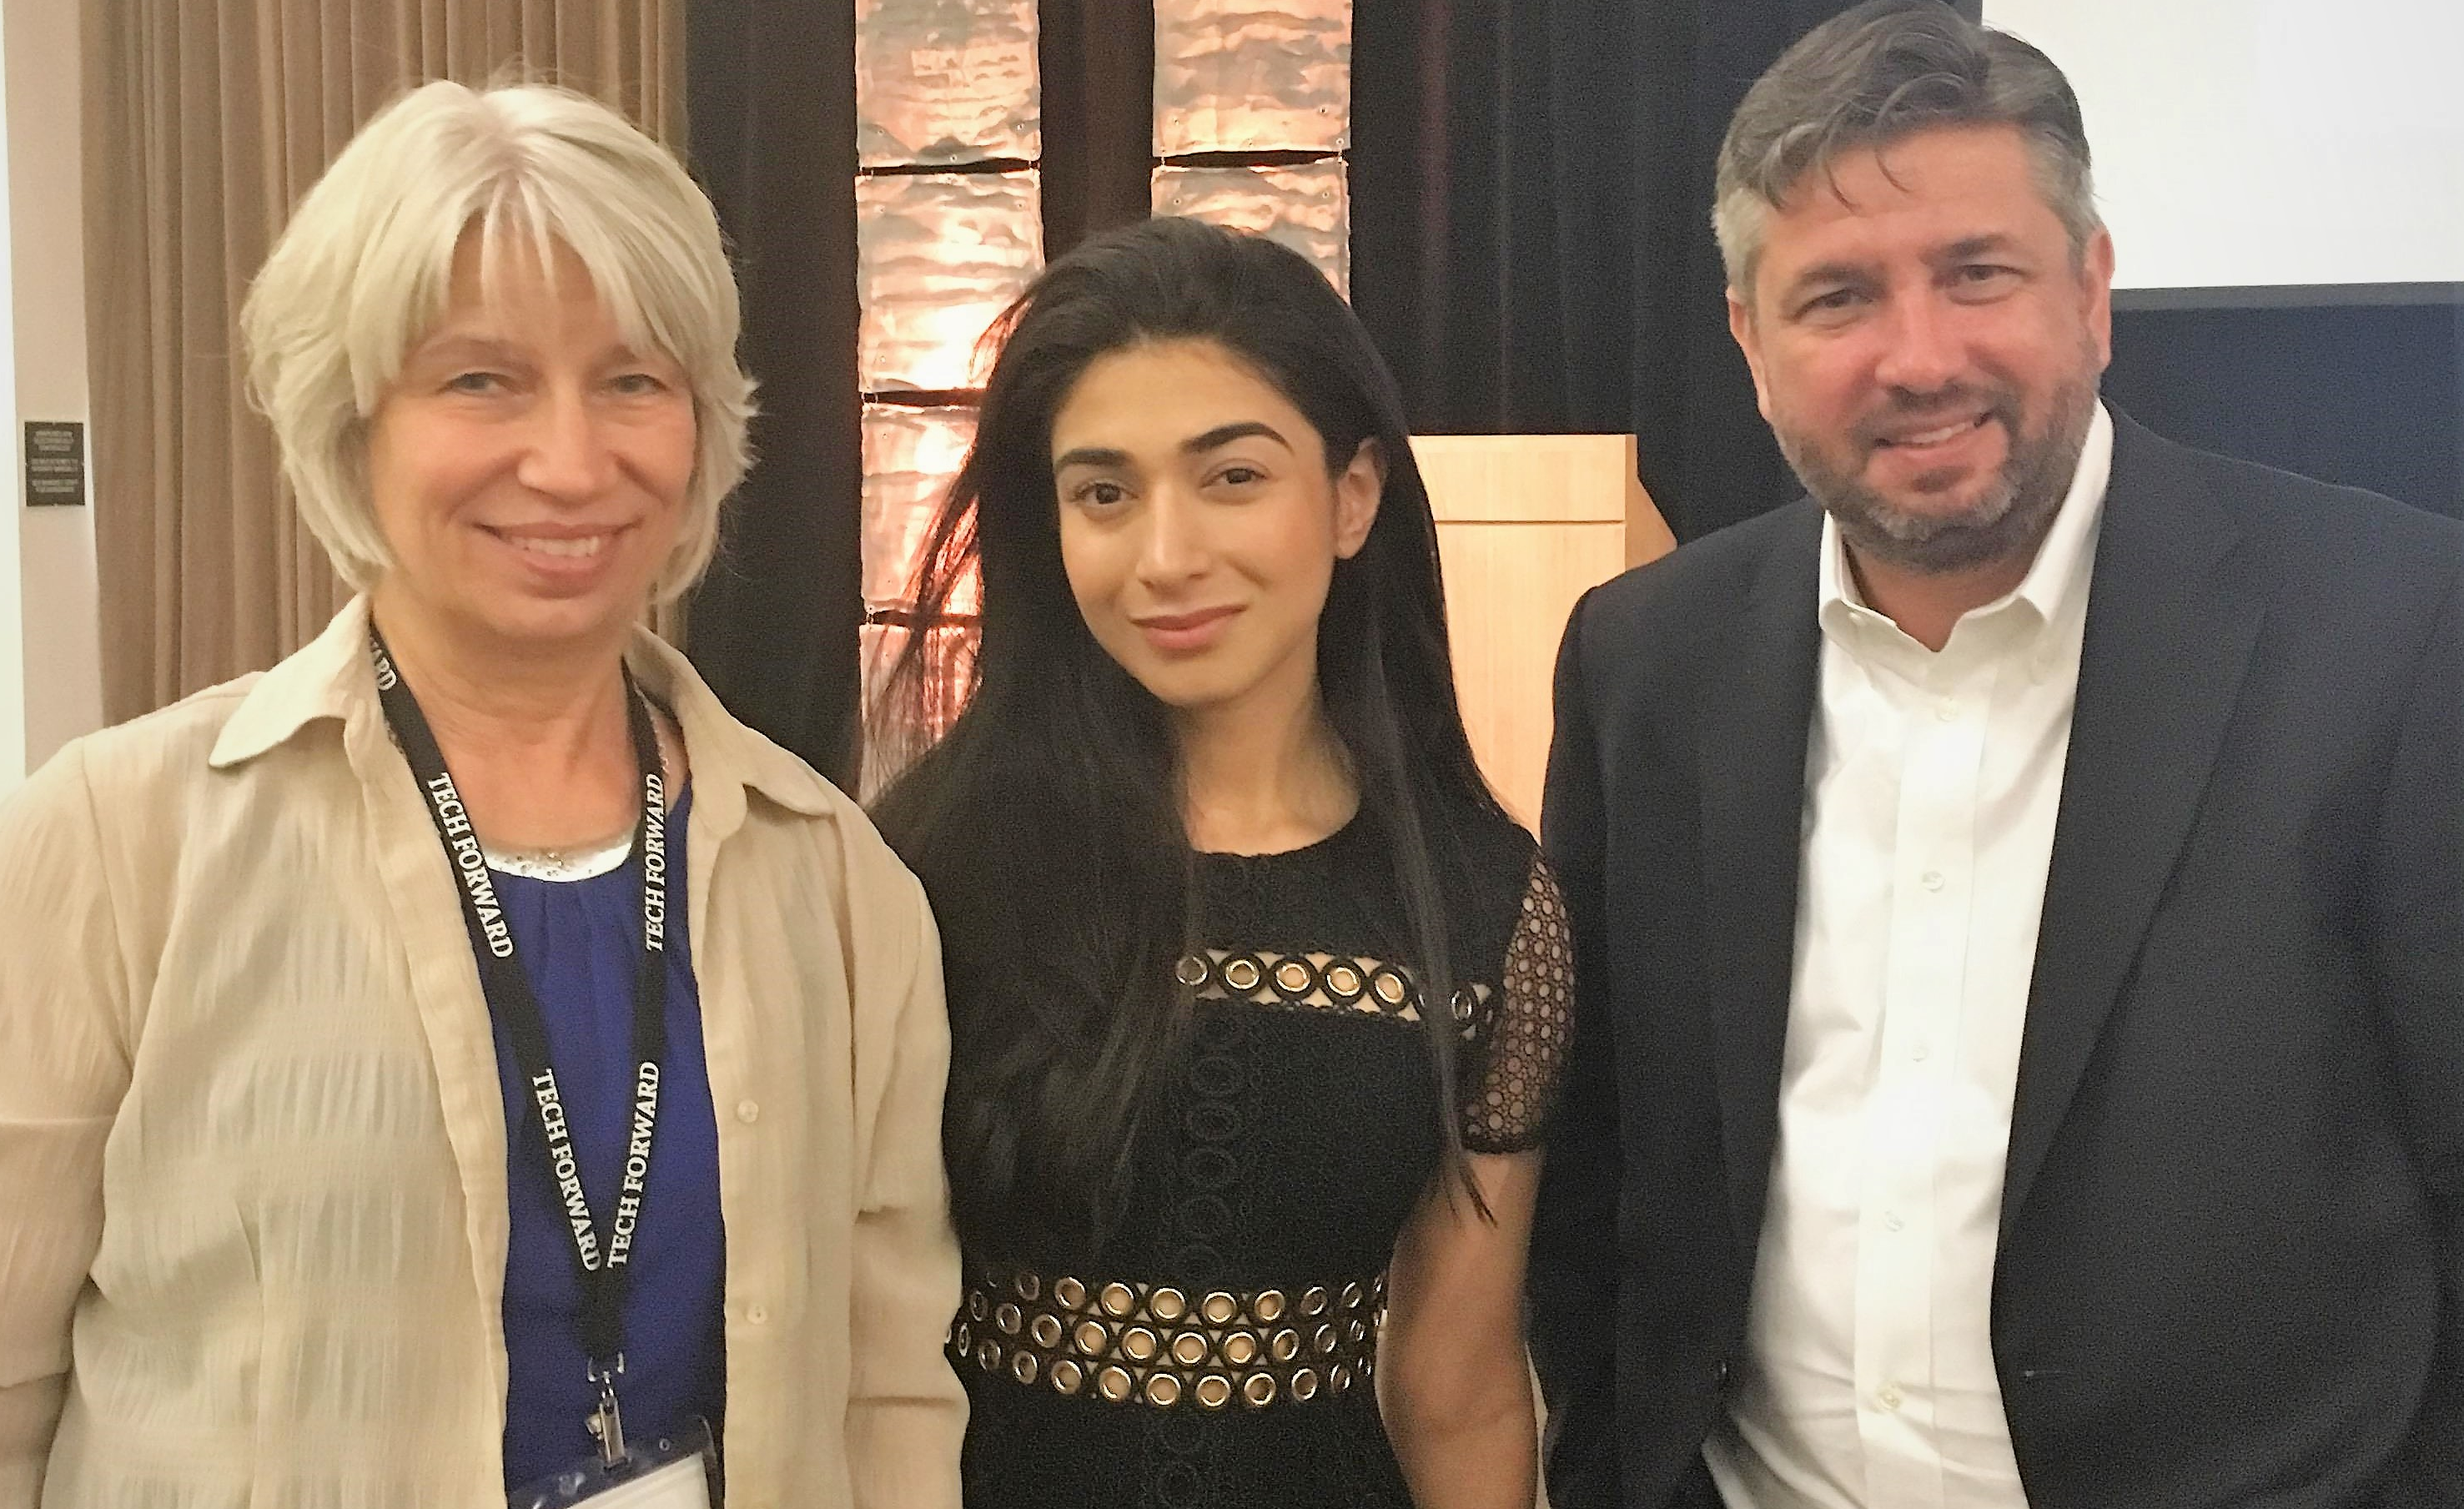 Rebecca Masisak CEO TechSoup, Shiza Shahid Co-Founder NOW Ventures & The Malala Fund, Patrick Callihan Executive Director Tech Impact